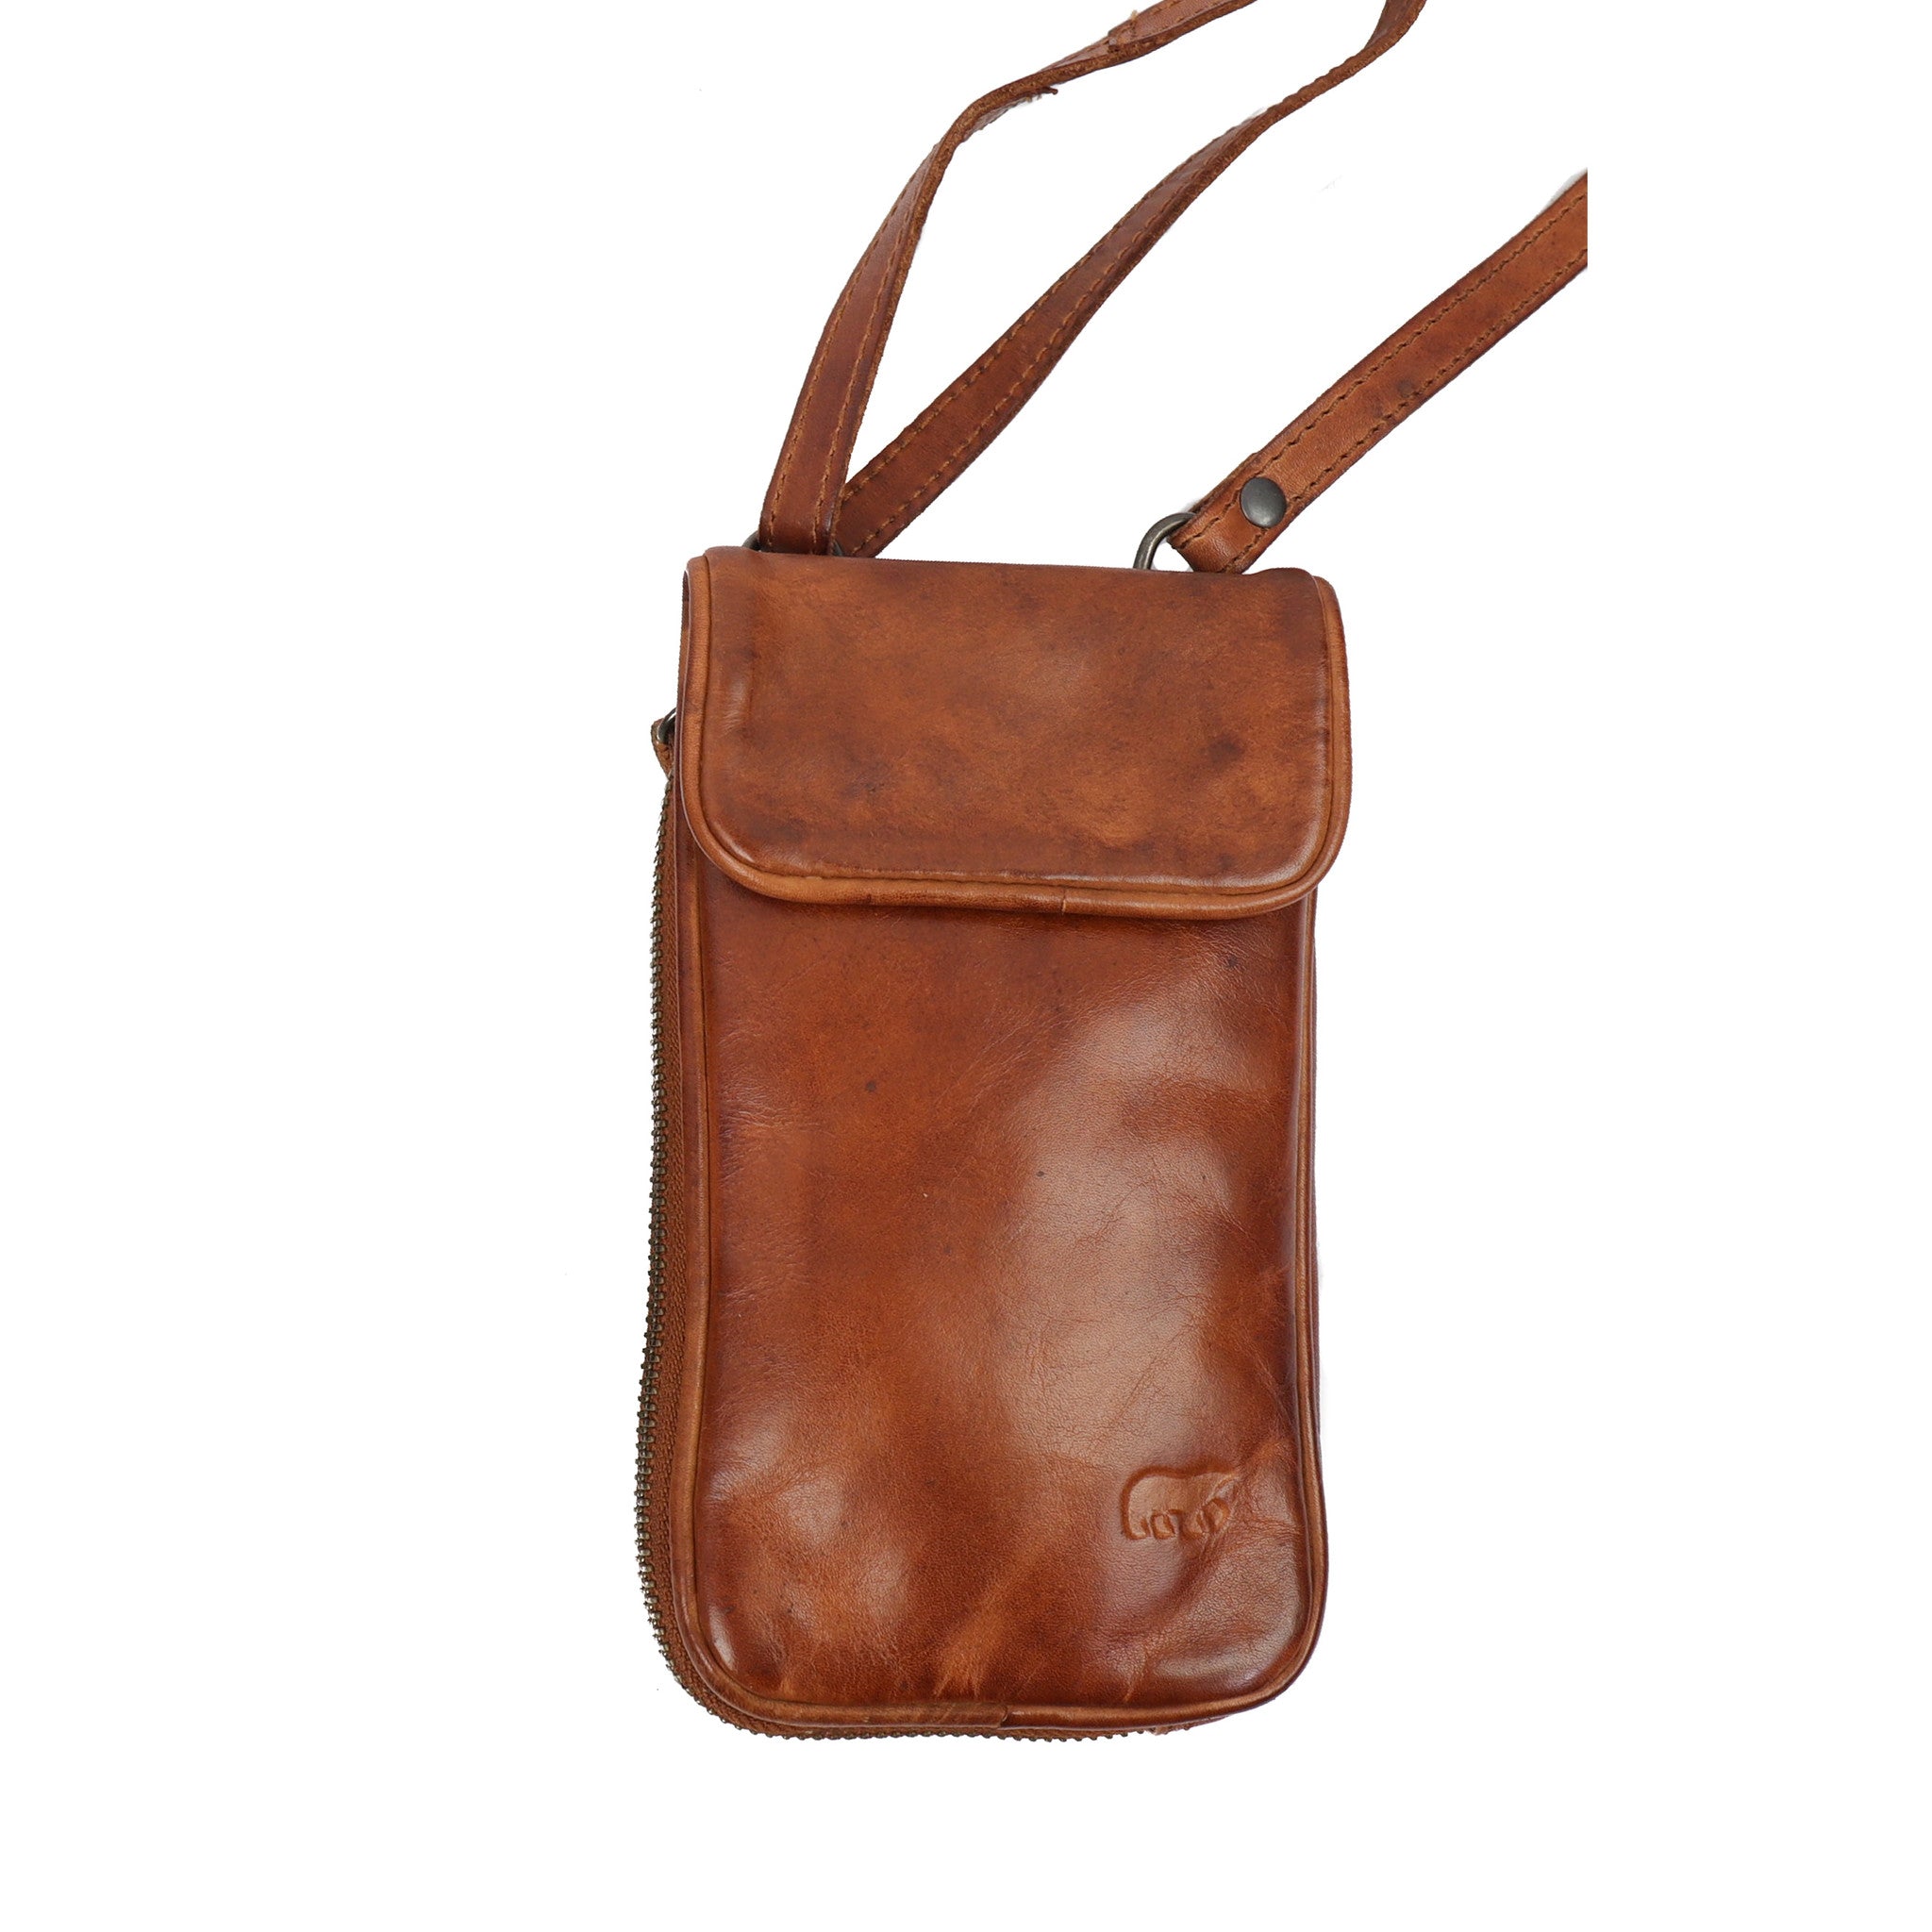 Phone bag 'Elske' cognac - CL 41579